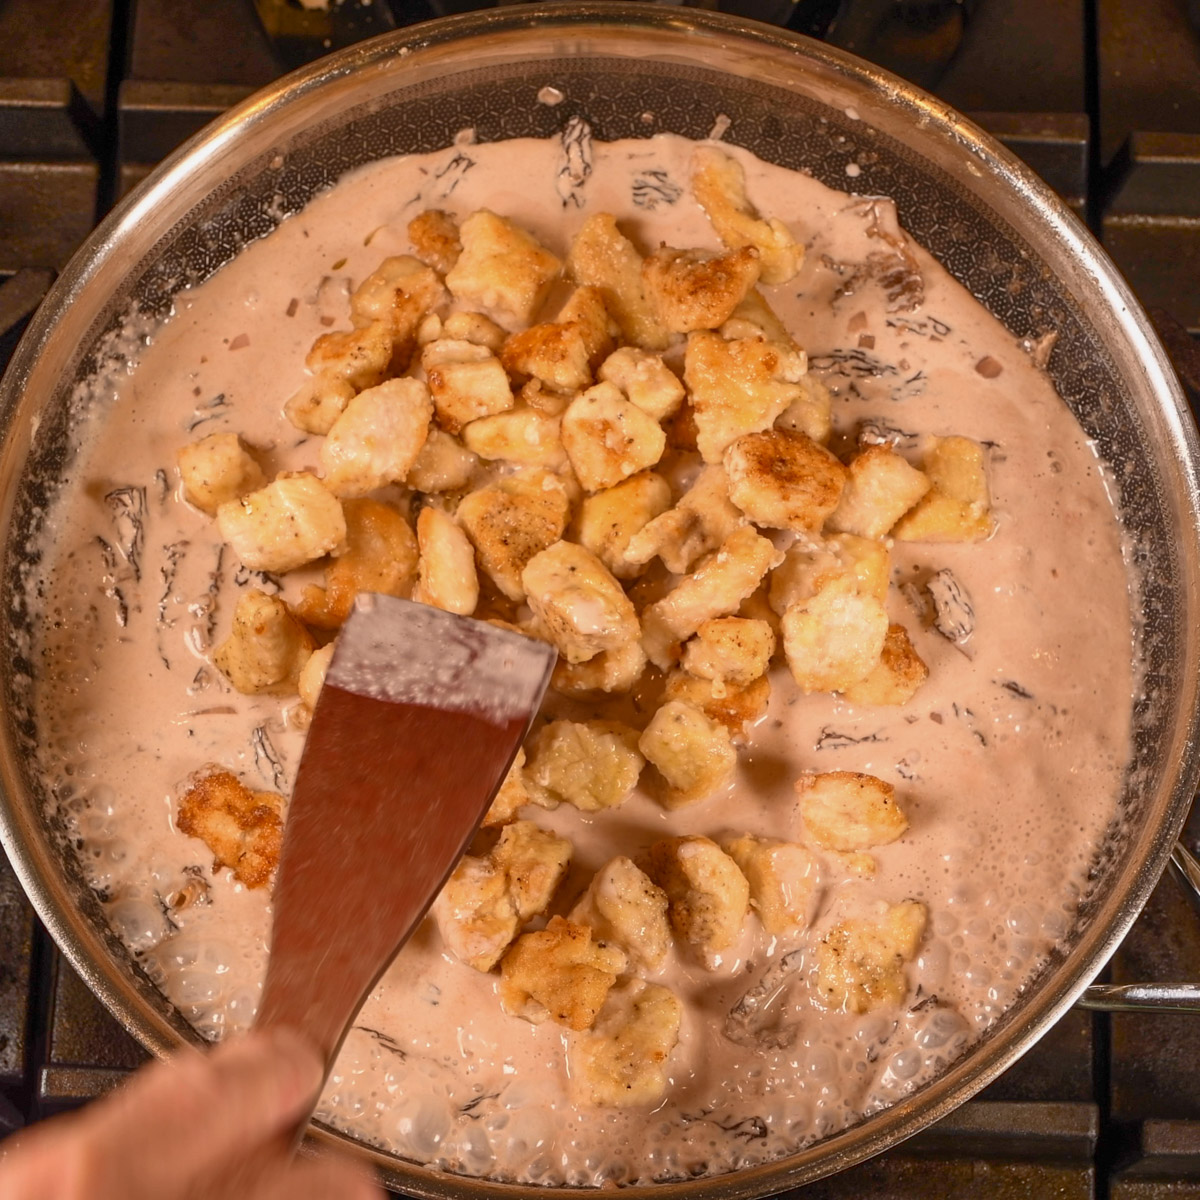 Add chicken to morel mushrooms.